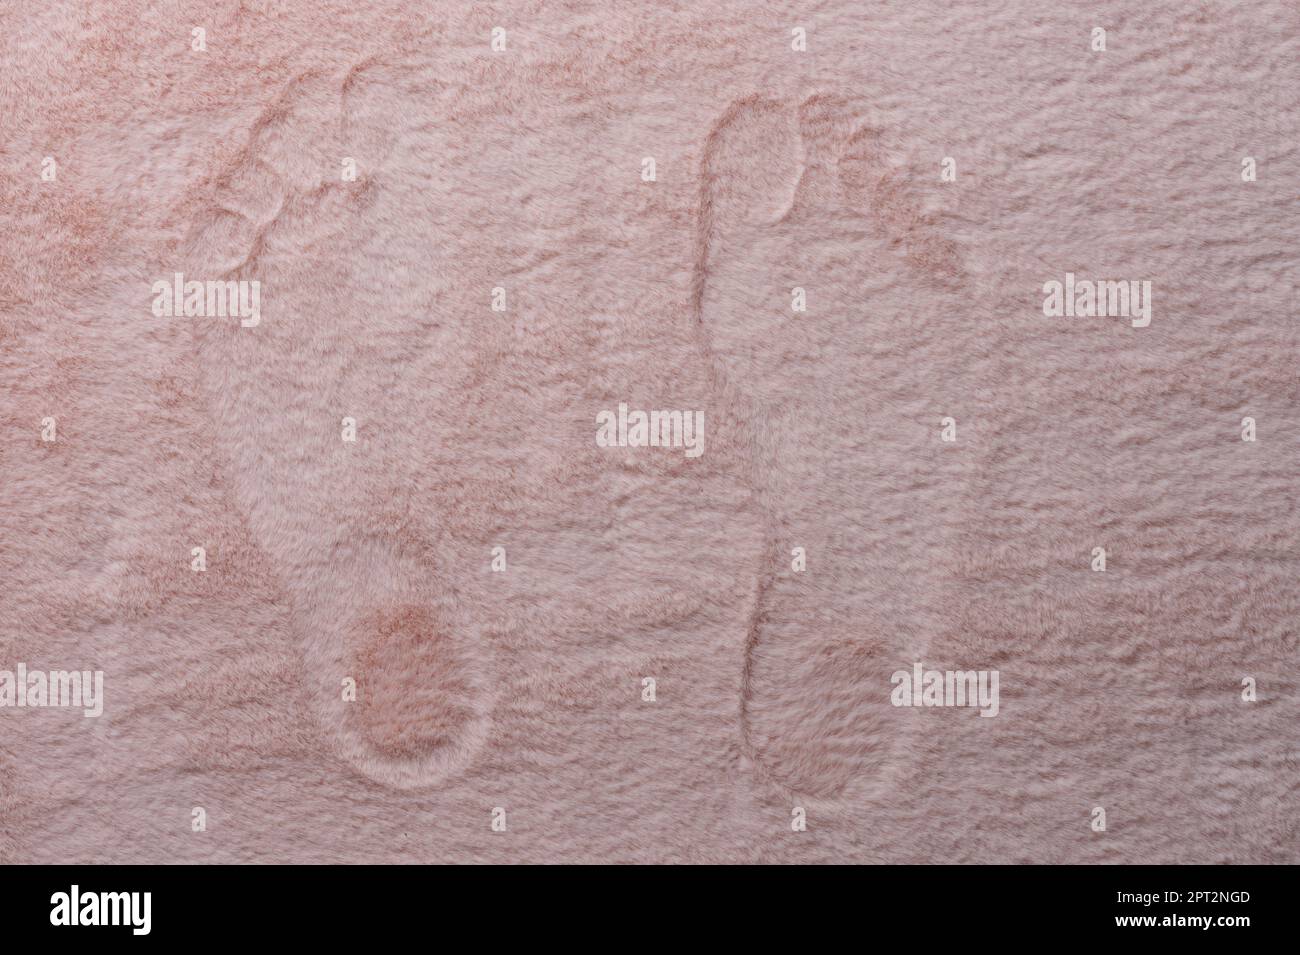 Traces de pied sur tapis rose vide macro vue rapprochée Banque D'Images